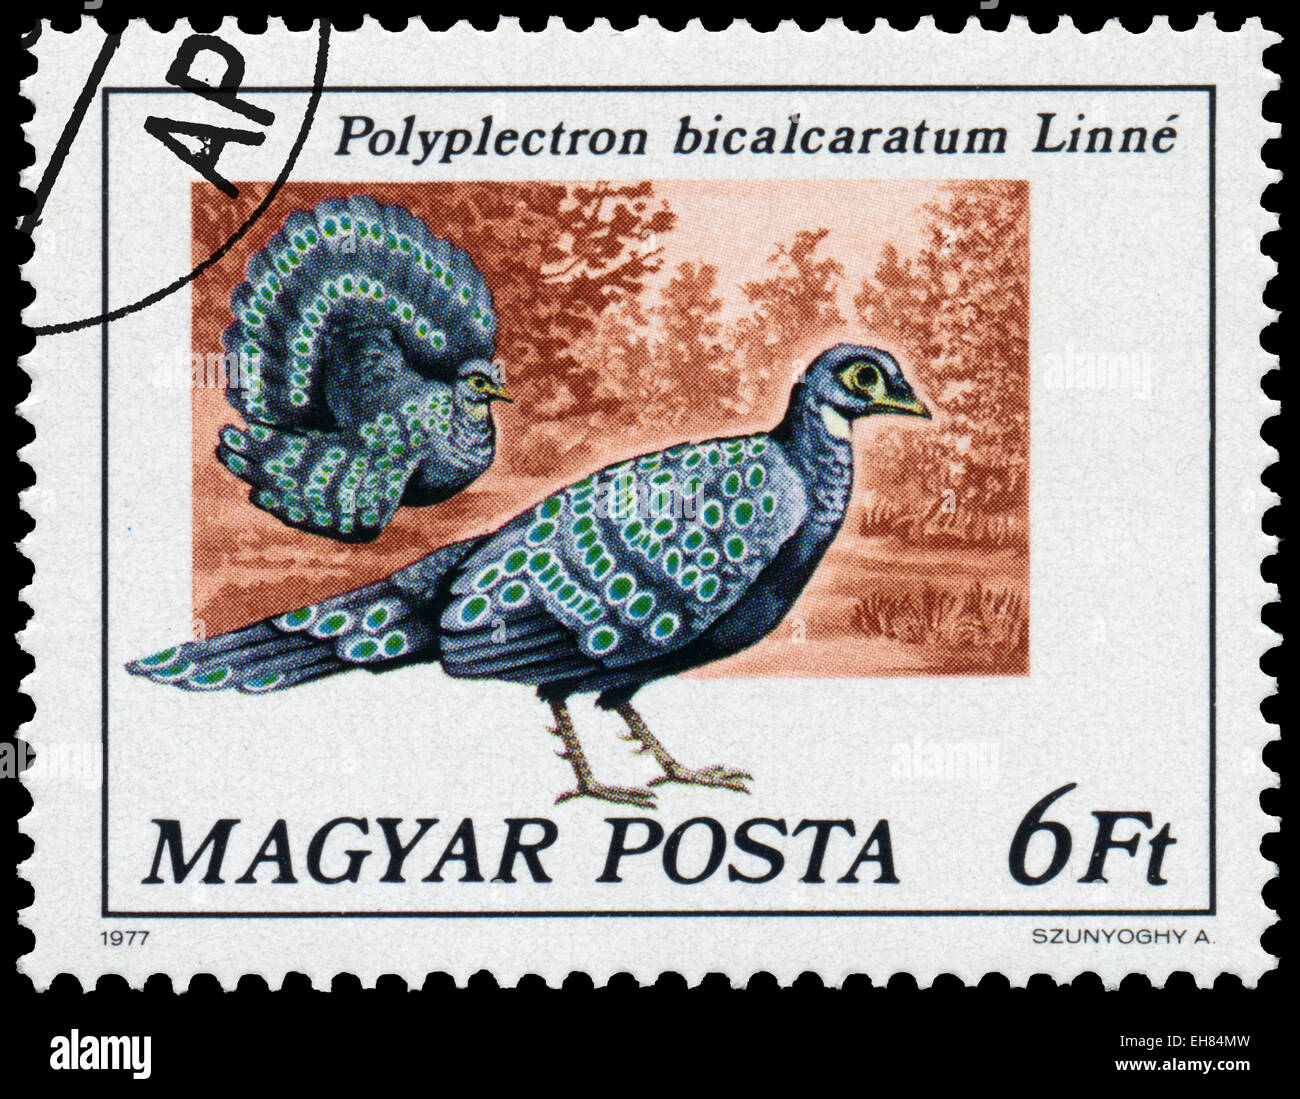 Ungheria - circa 1977: timbro stampato in Ungheria è in grigio peacock-fagiano - Polyplectron bicalcaratum Linne, serie Peacock bir Foto Stock